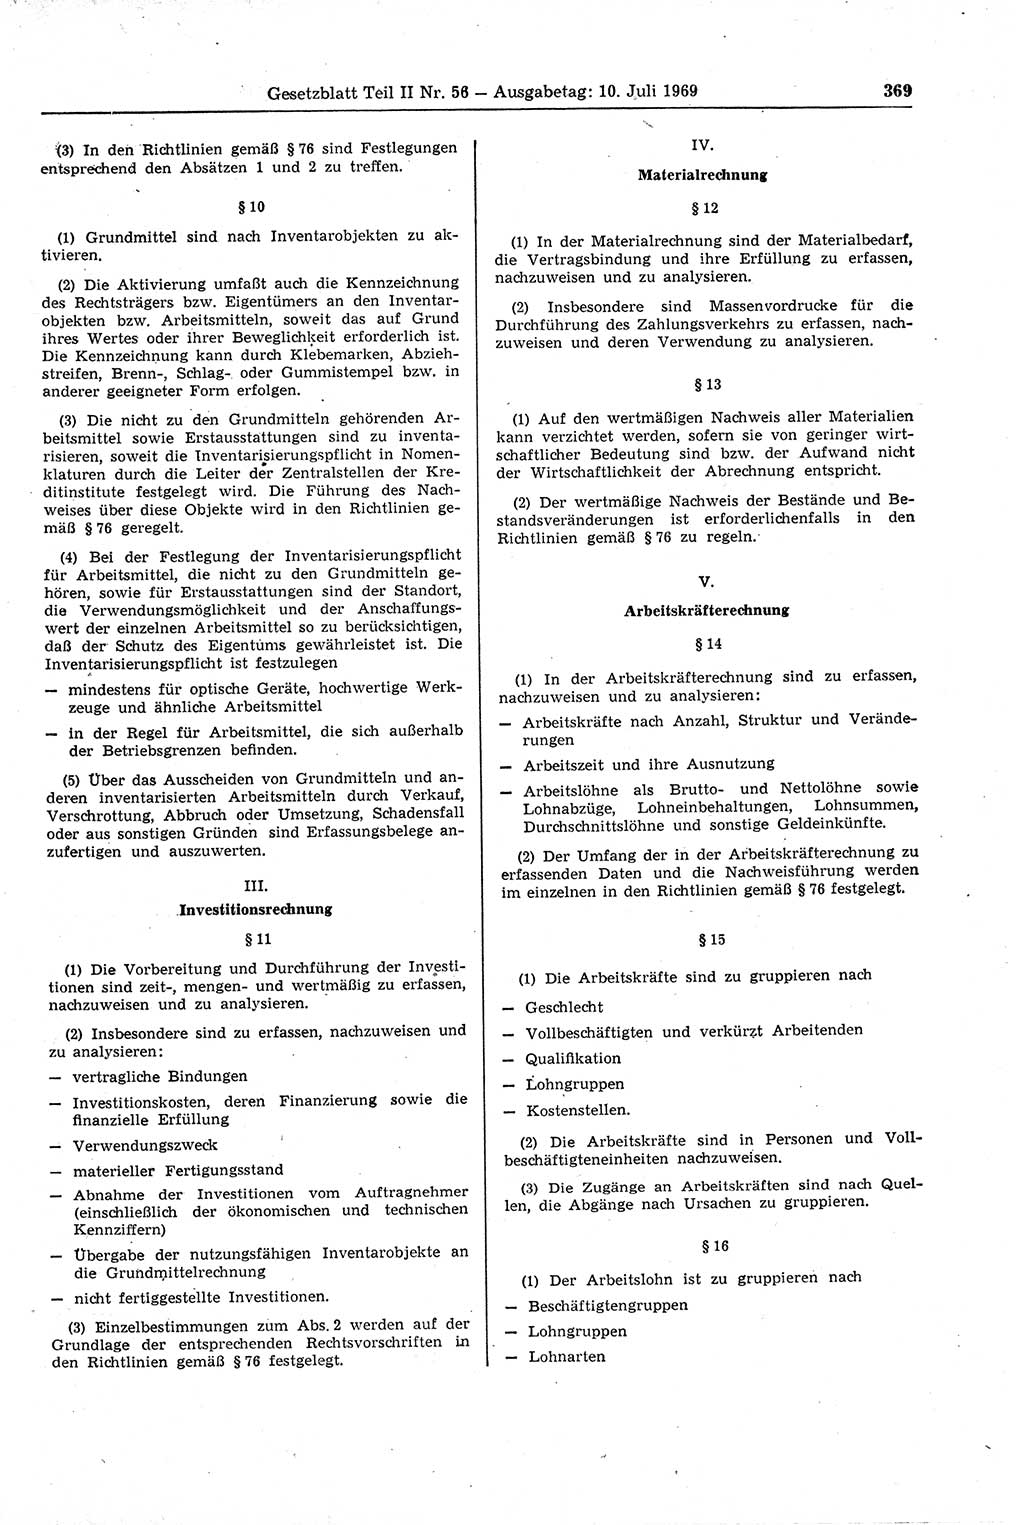 Gesetzblatt (GBl.) der Deutschen Demokratischen Republik (DDR) Teil ⅠⅠ 1969, Seite 369 (GBl. DDR ⅠⅠ 1969, S. 369)